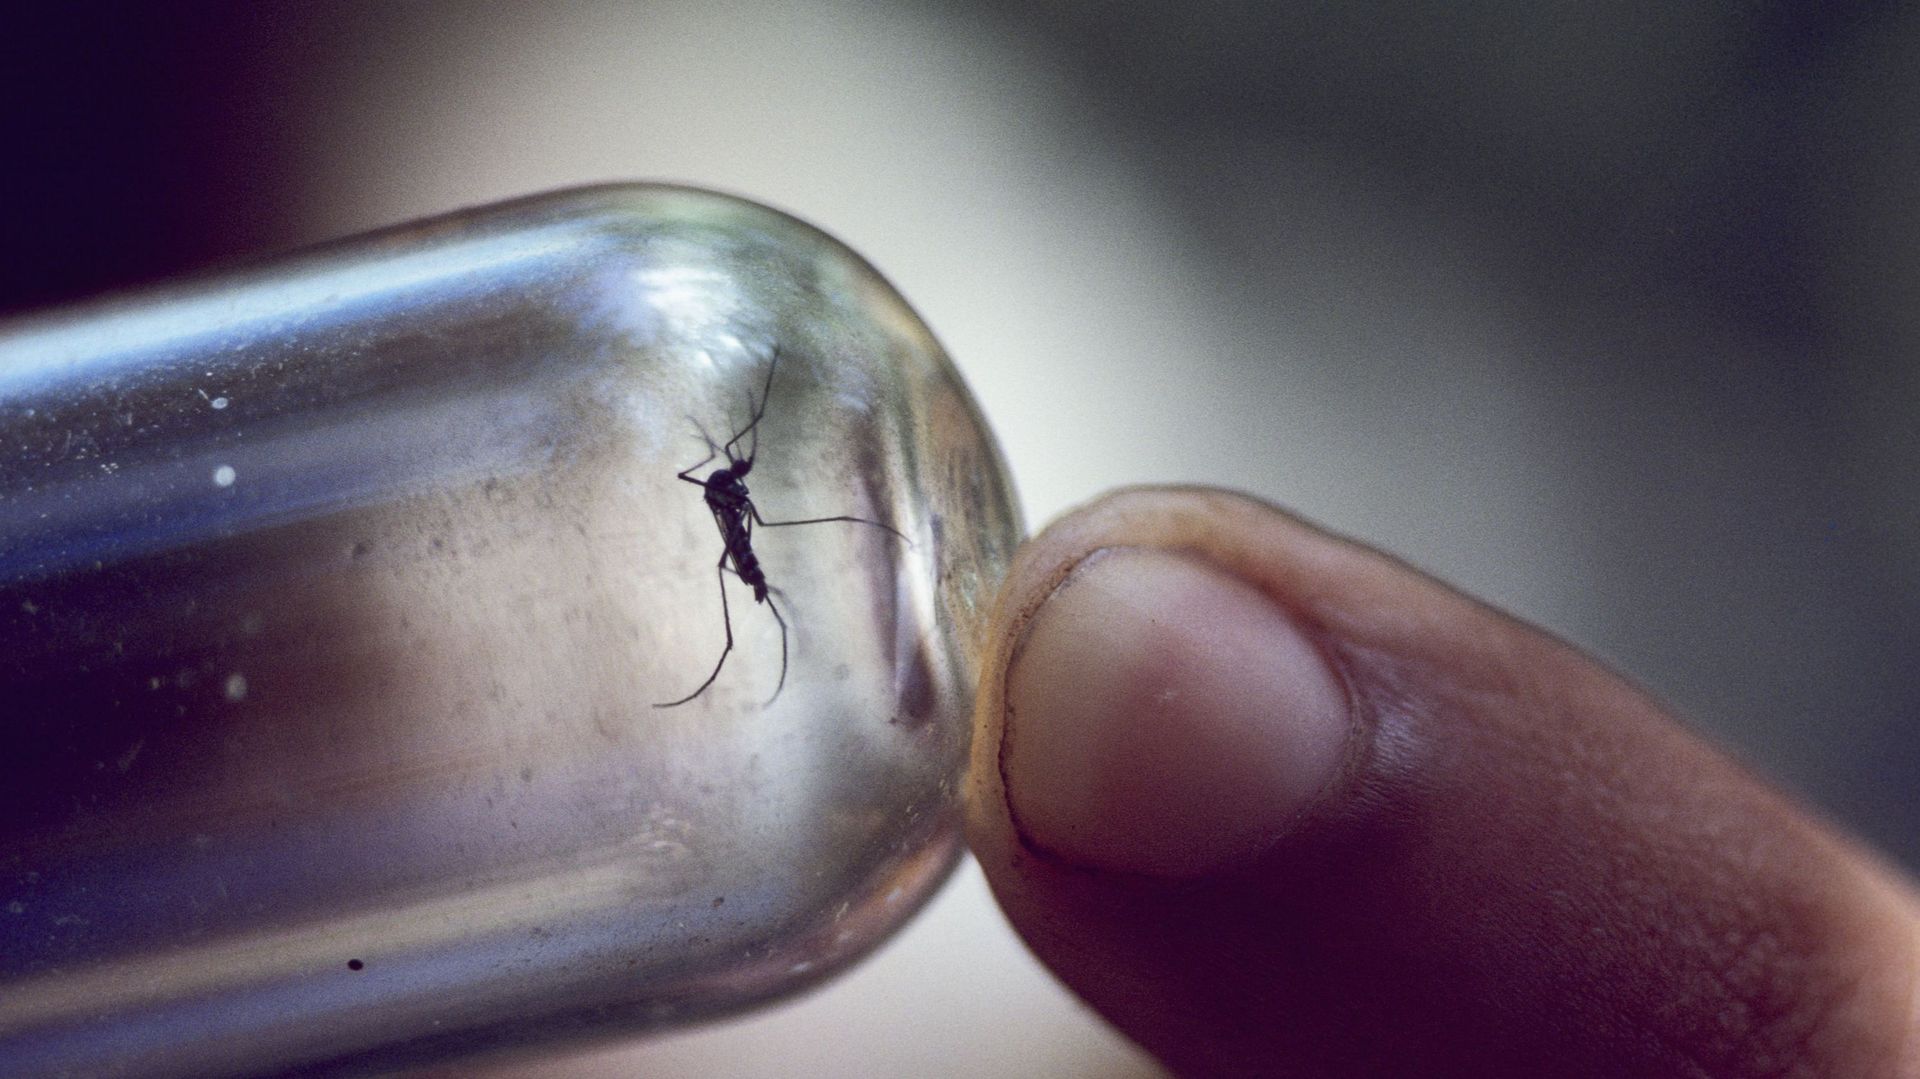 La dengue, la fièvre jaune et le paludisme font bien plus de ravages dans le monde que le coronavirus